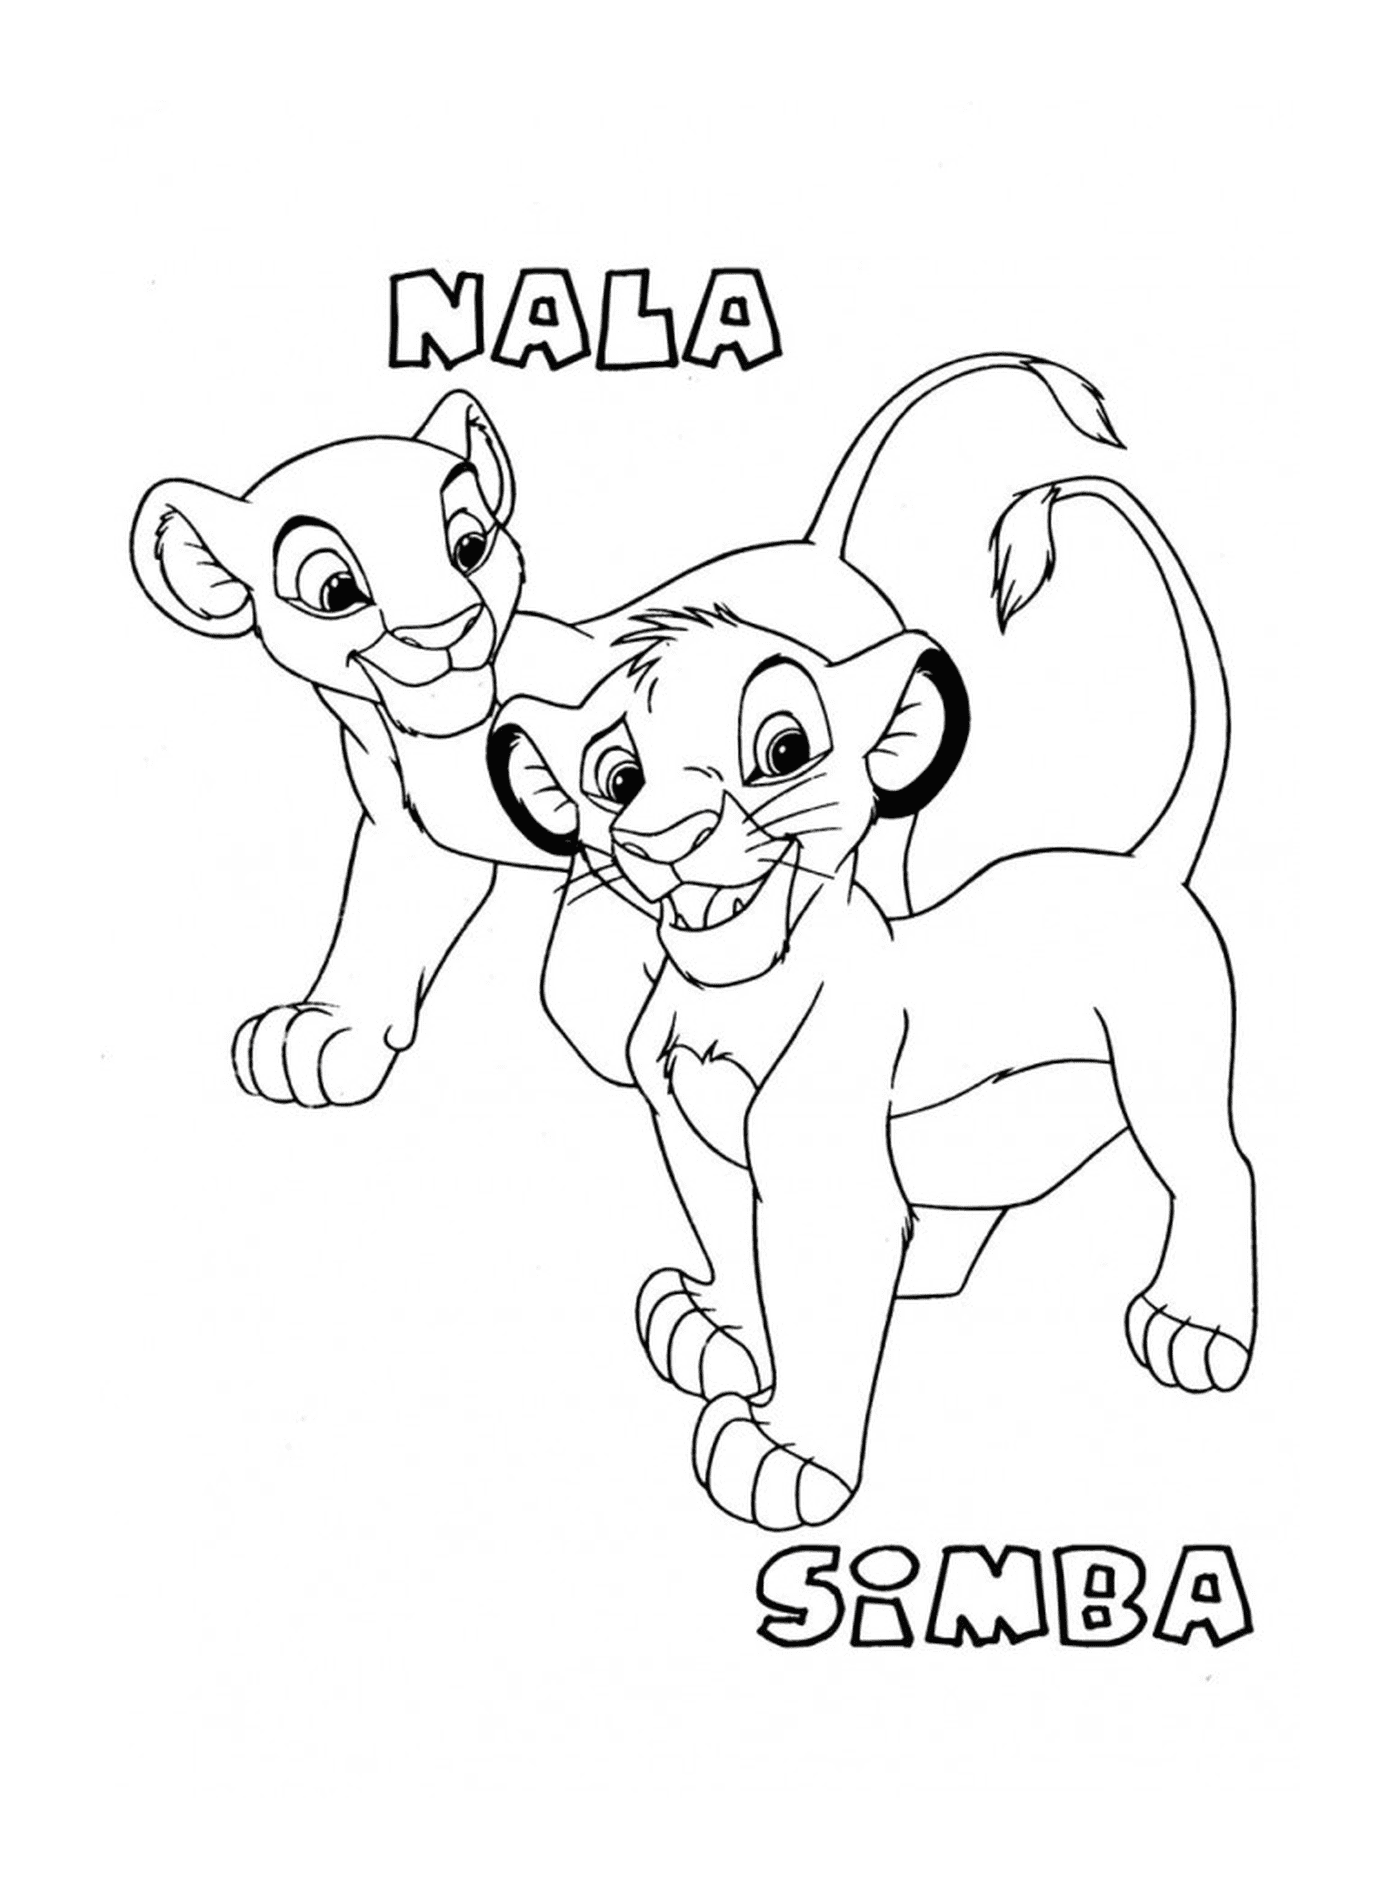  Simba y Nala bebés en El Rey León 